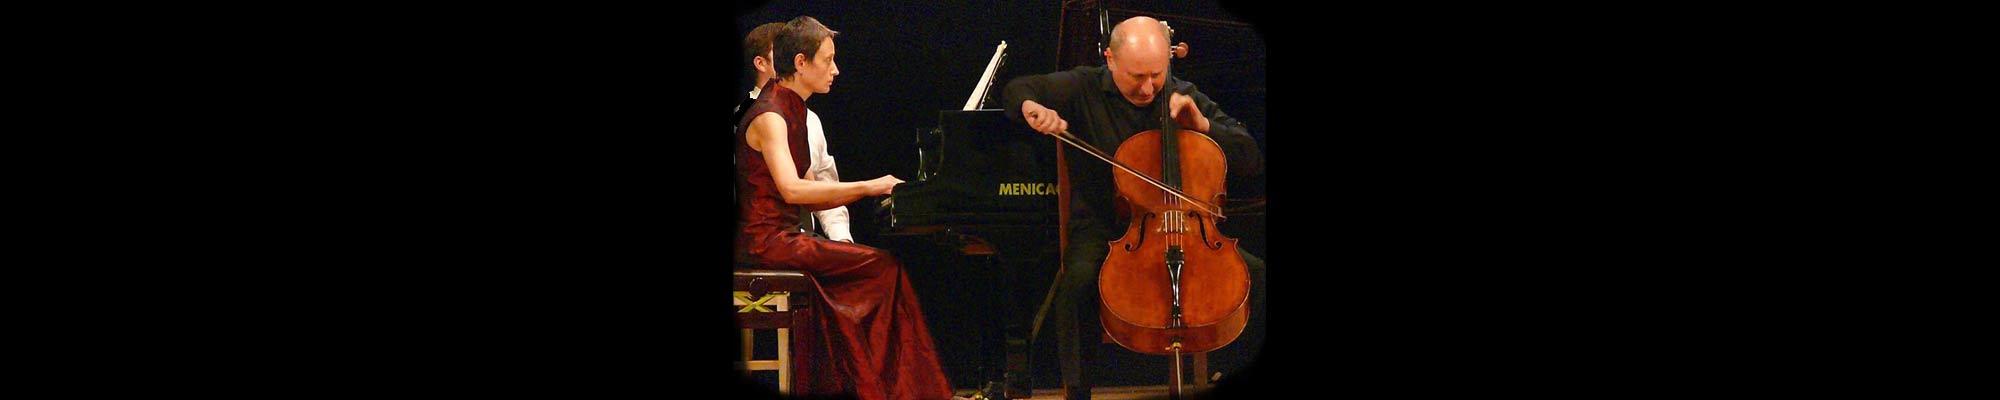 Irina Nuzova piano and Misha Quint cello